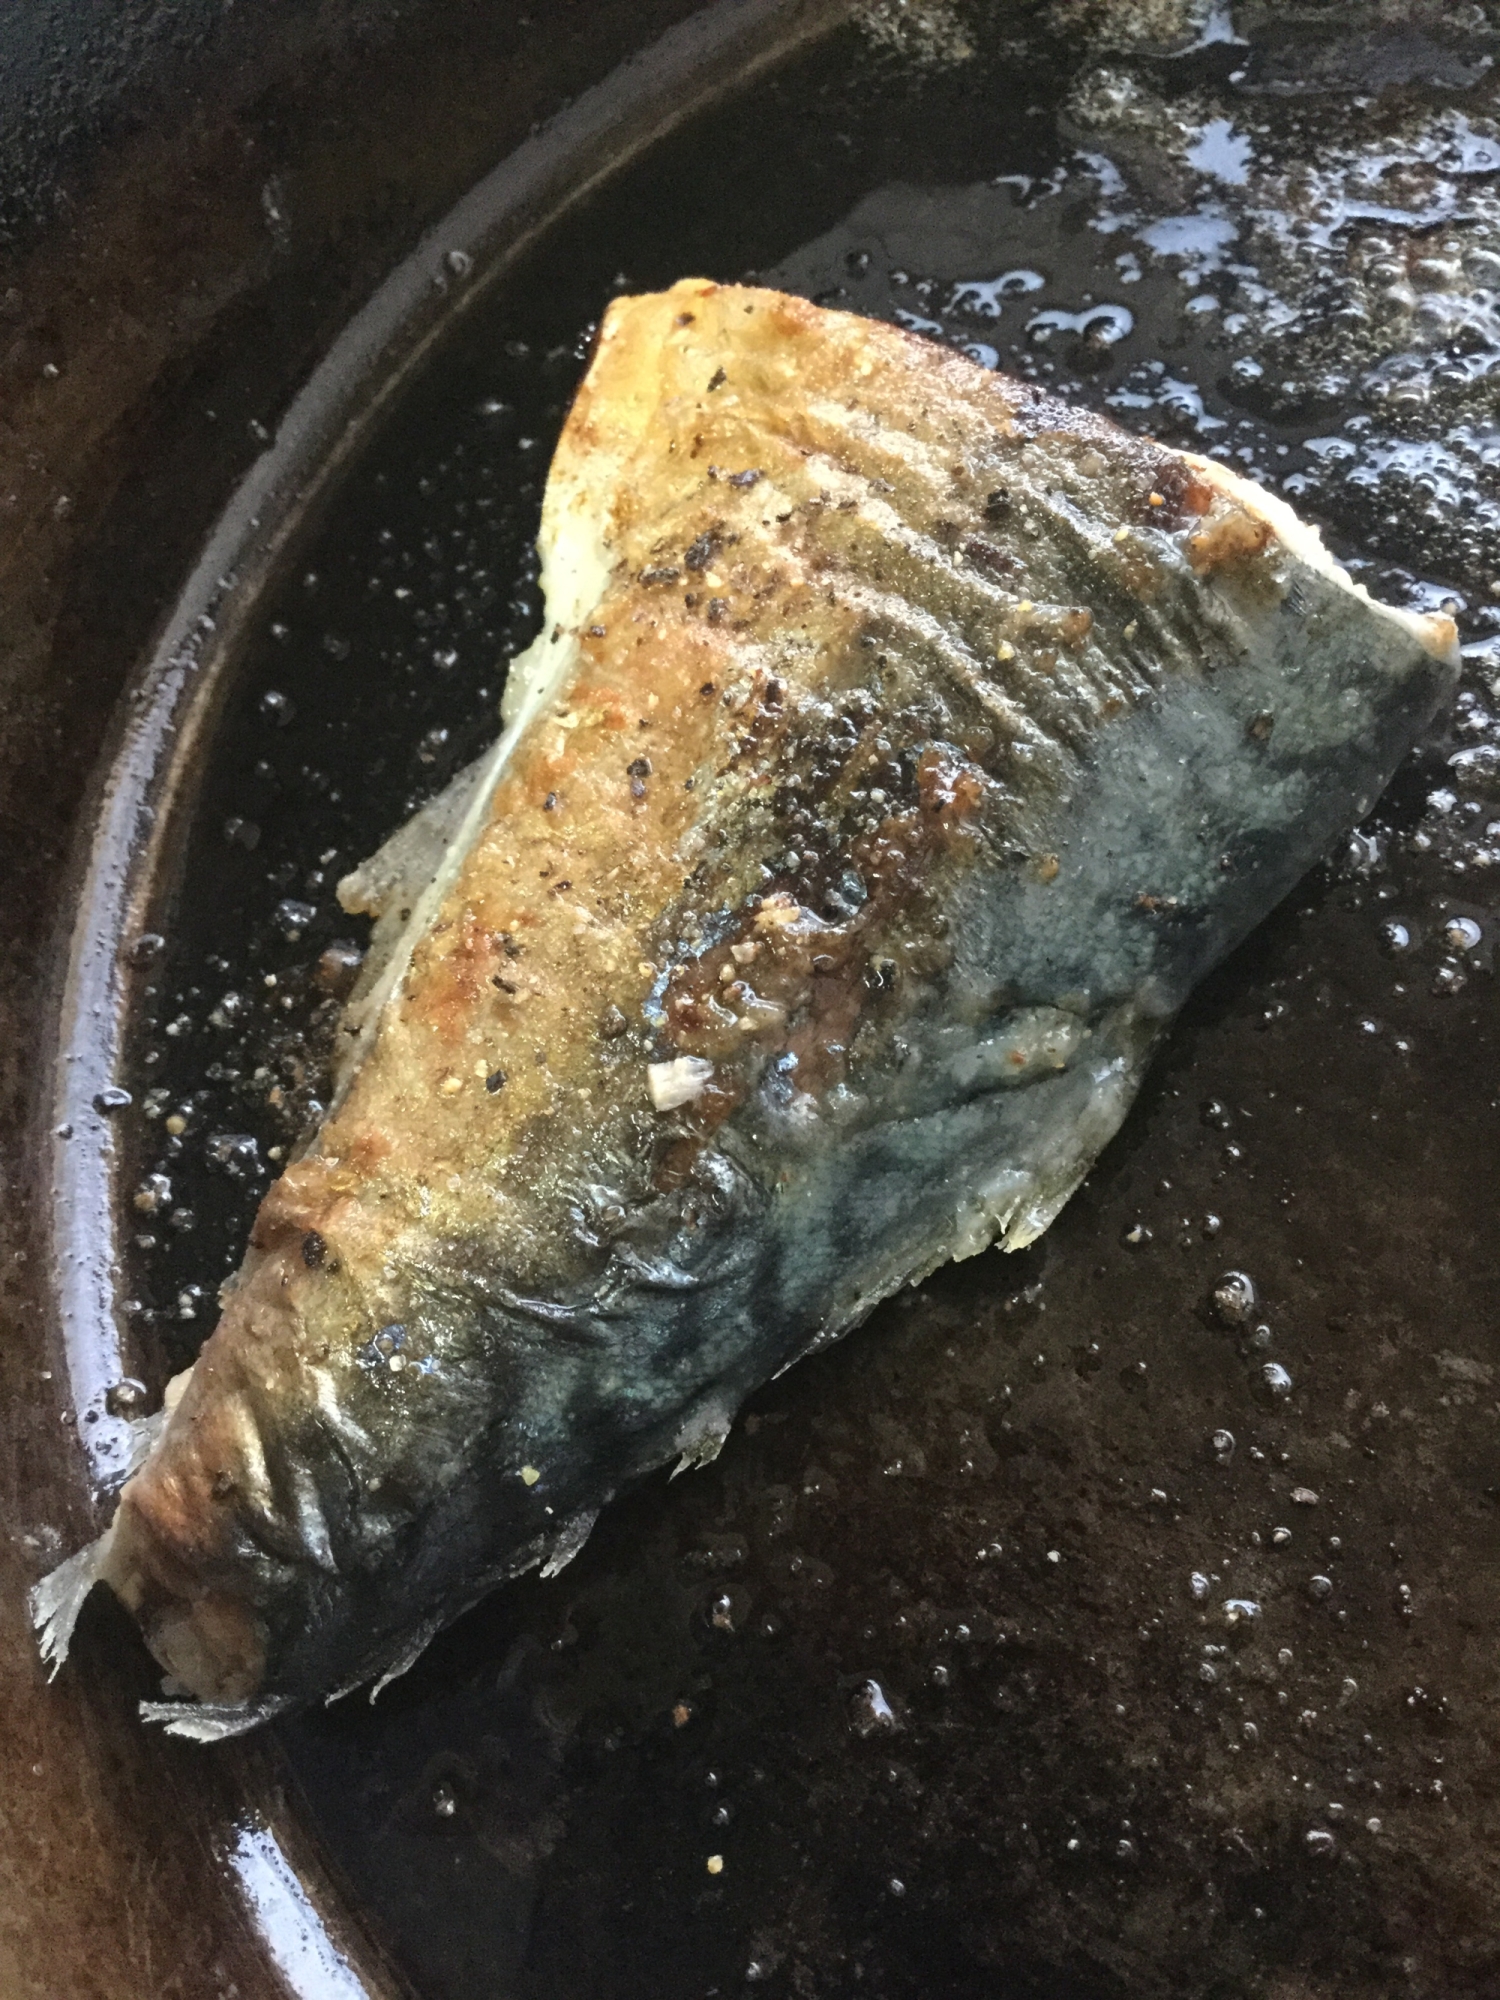 鯖のオリーブオイル焼き